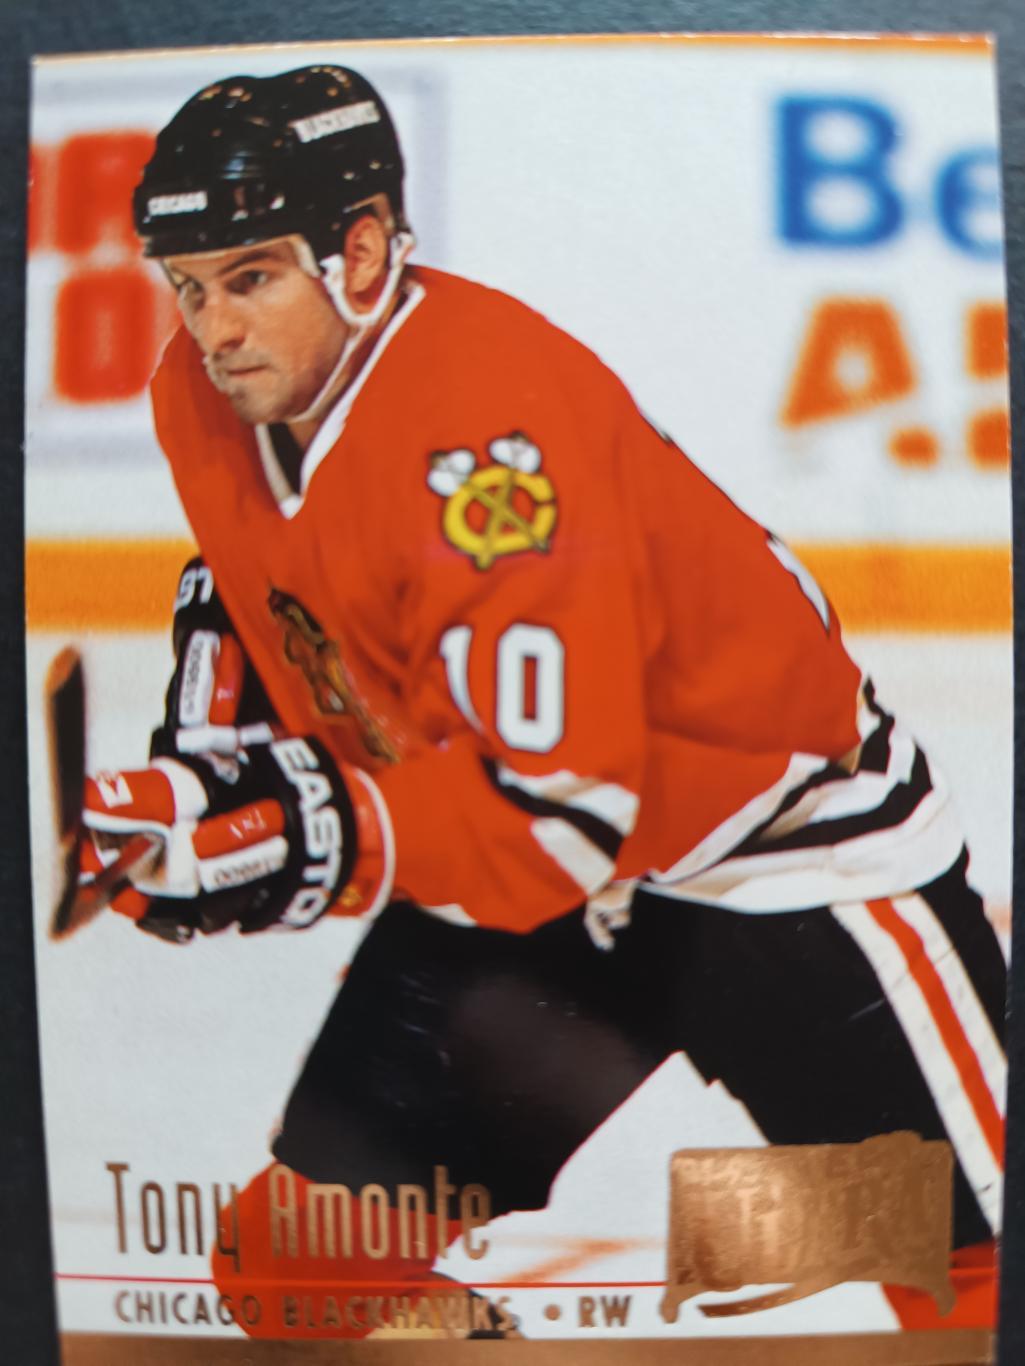 ХОККЕЙ КАРТОЧКА НХЛ FLEER ULTRA 1994-95 NHL TONY AMONTE BLACK HAWKS #273